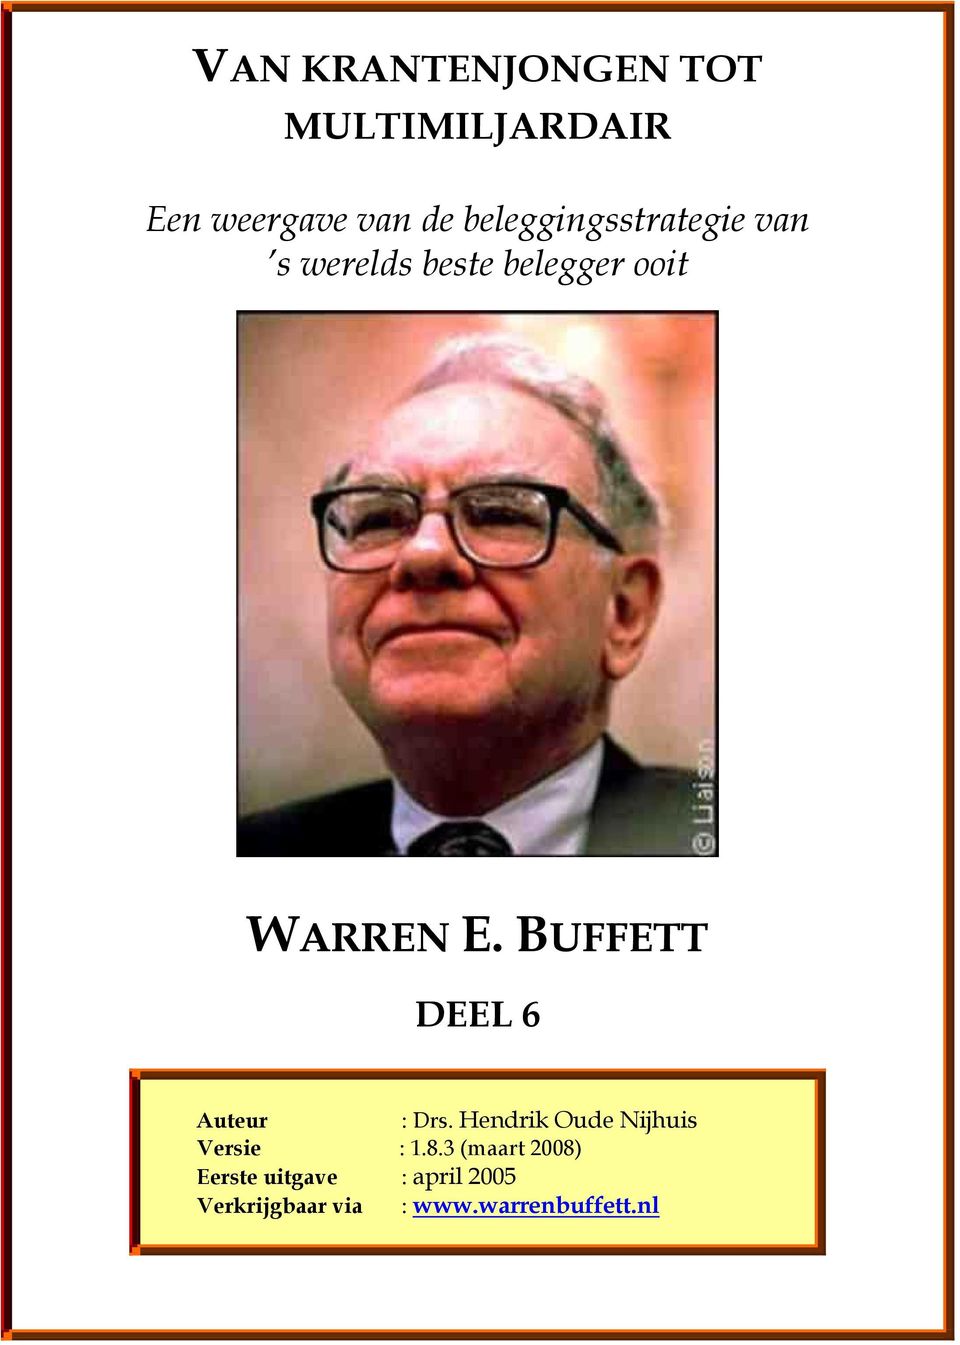 BUFFETT DEEL 6 Auteur : Drs. Hendrik Oude Nijhuis Versie : 1.8.